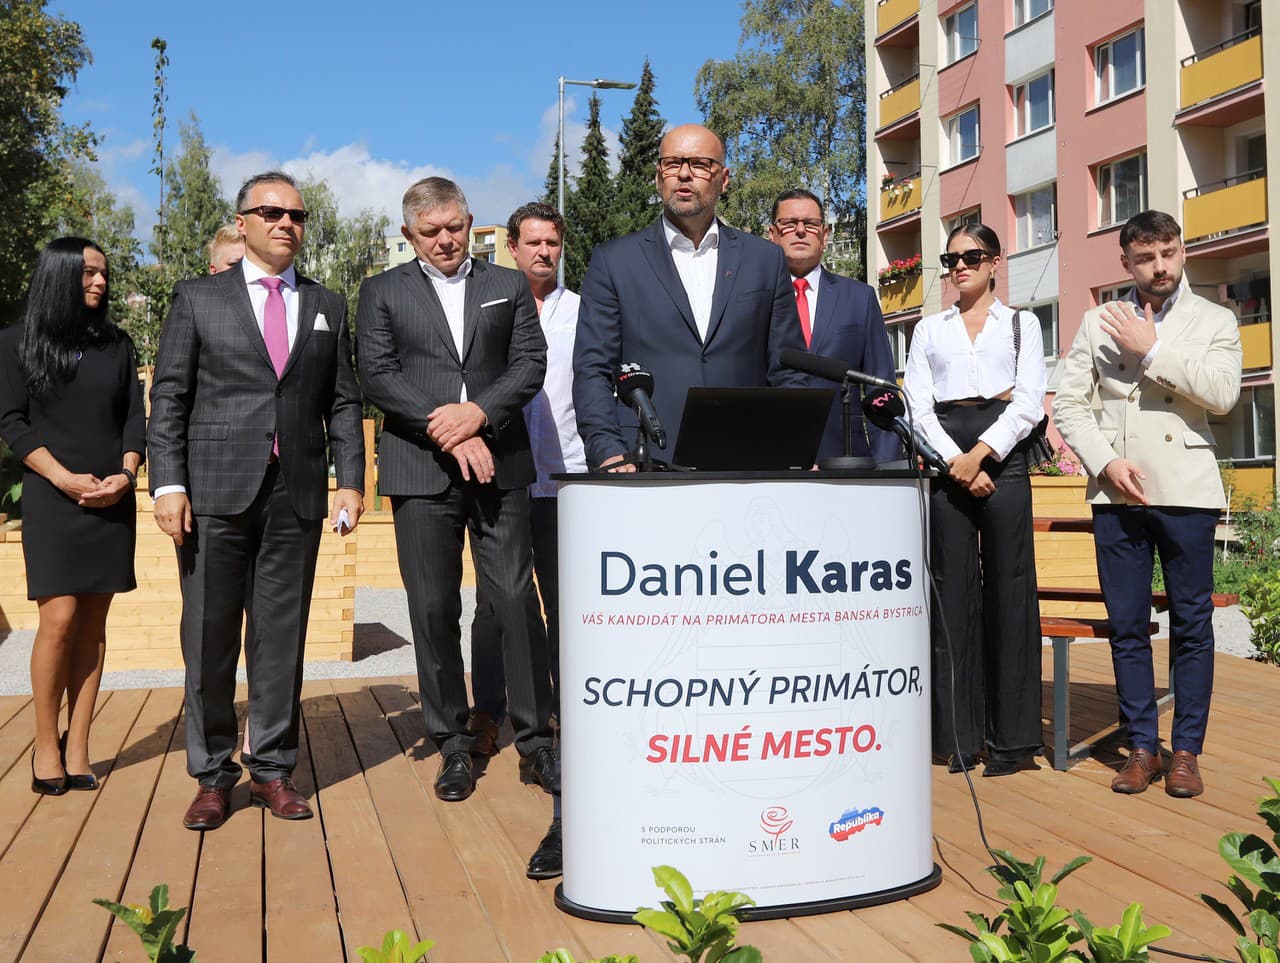 Oficiálne ohlásenie kandidatúry poslanca mestského zastupiteľstva Daniela Karasa na post primátora mesta Banská Bystrica.